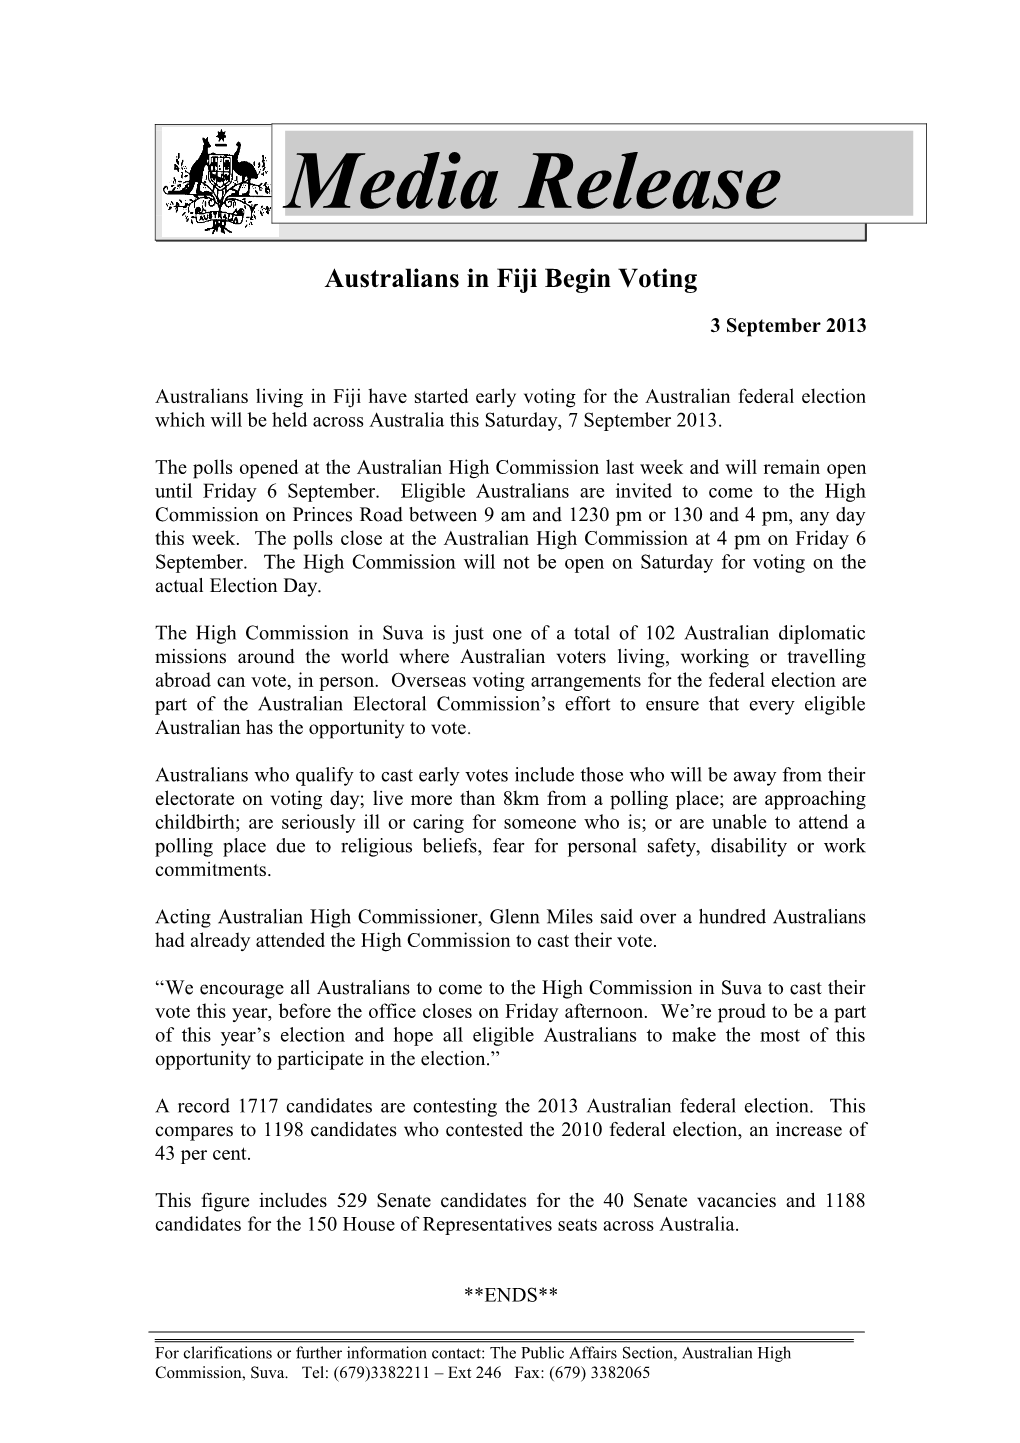 Australians in Fiji Begin Voting